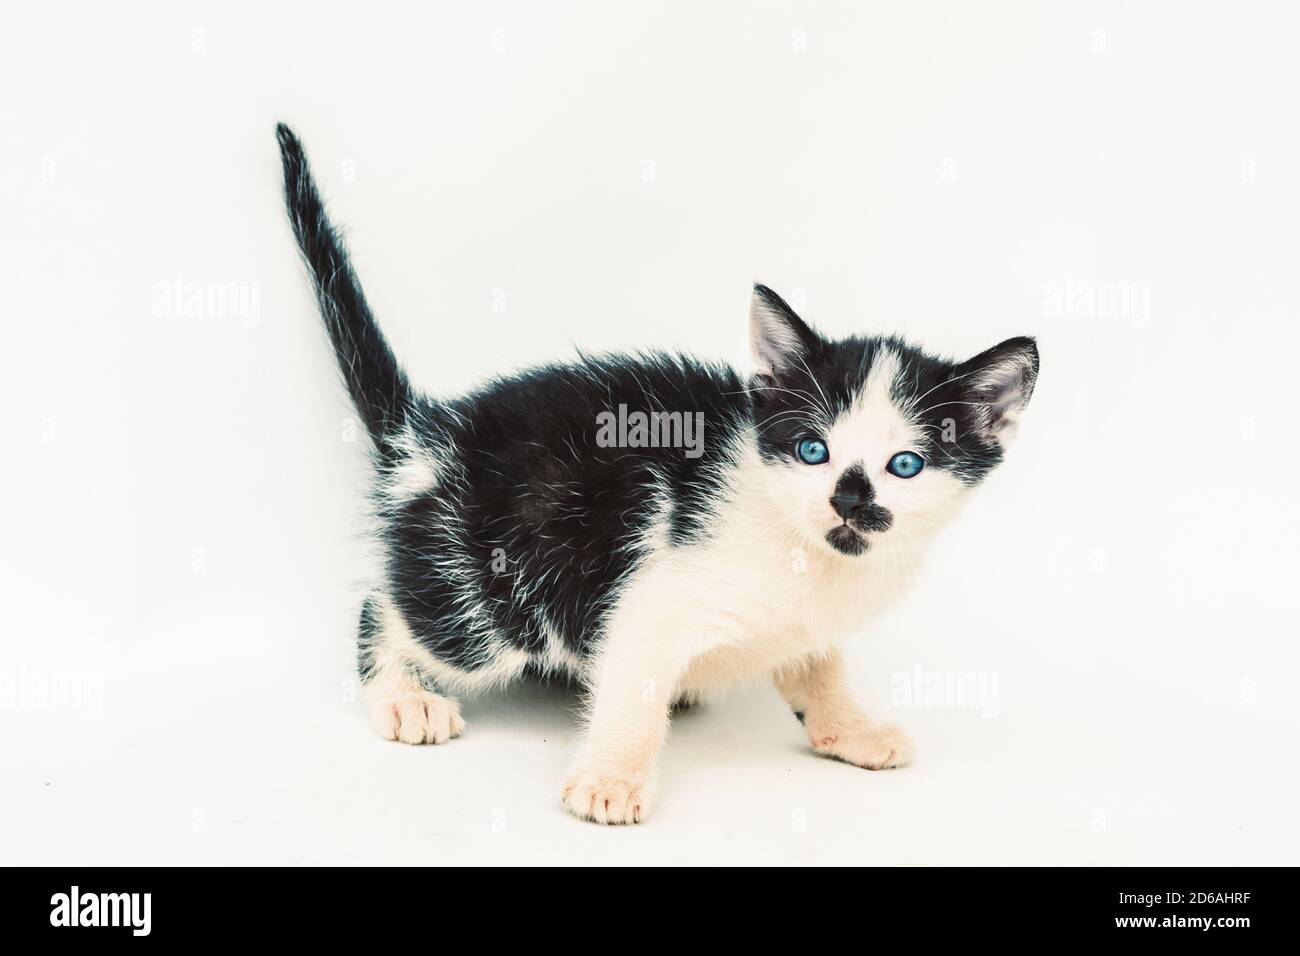 magnifique chat noir blanc à pois avec des yeux bleu profond et point noir sur le museau sur fond blanc Banque D'Images